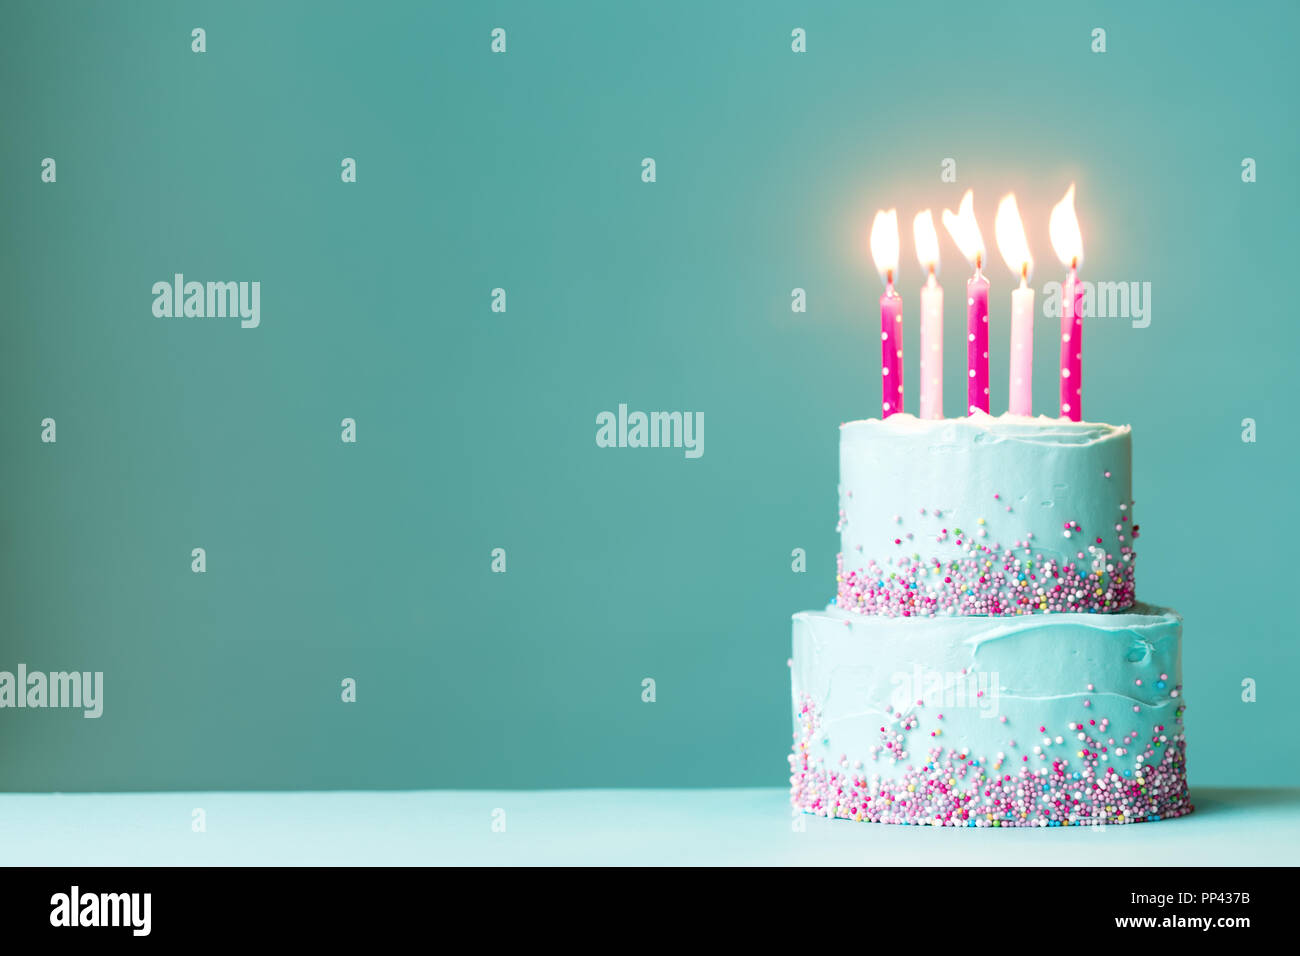 Bánh sinh nhật là điều không thể thiếu trong bất kỳ buổi tiệc sinh nhật nào. Hãy xem hình ảnh liên quan để tìm kiếm những kiểu trang trí bánh độc đáo và thú vị, giúp bánh sinh nhật của bạn trở nên độc đáo và nổi bật hơn.